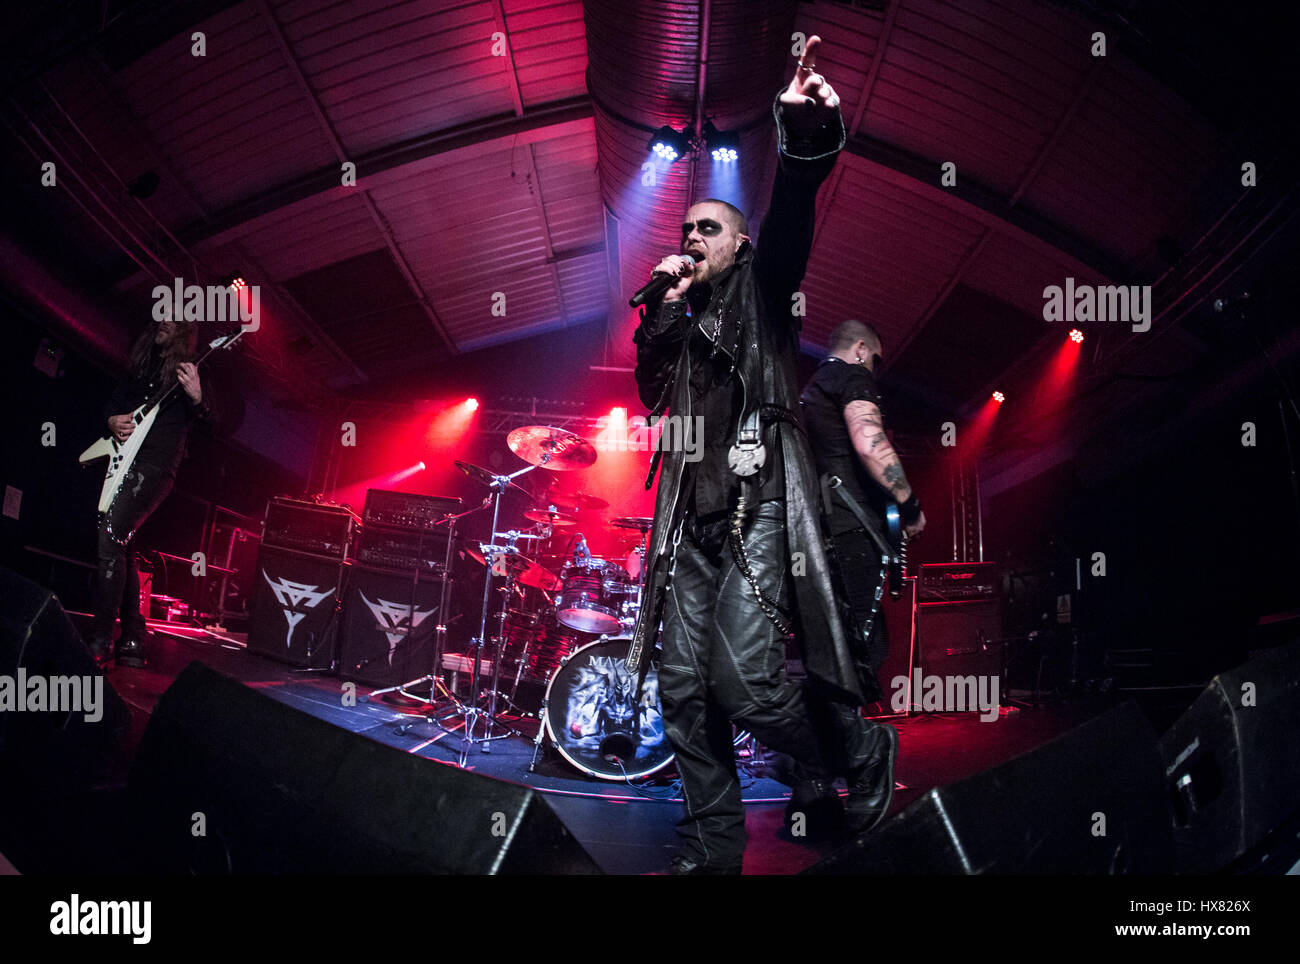 Manimal interpretando en vivo en el concierto en el motor Habitaciones con: Manimal Southampton donde: Southampton, Reino Unido cuando: 22 Feb 2017 Foto de stock